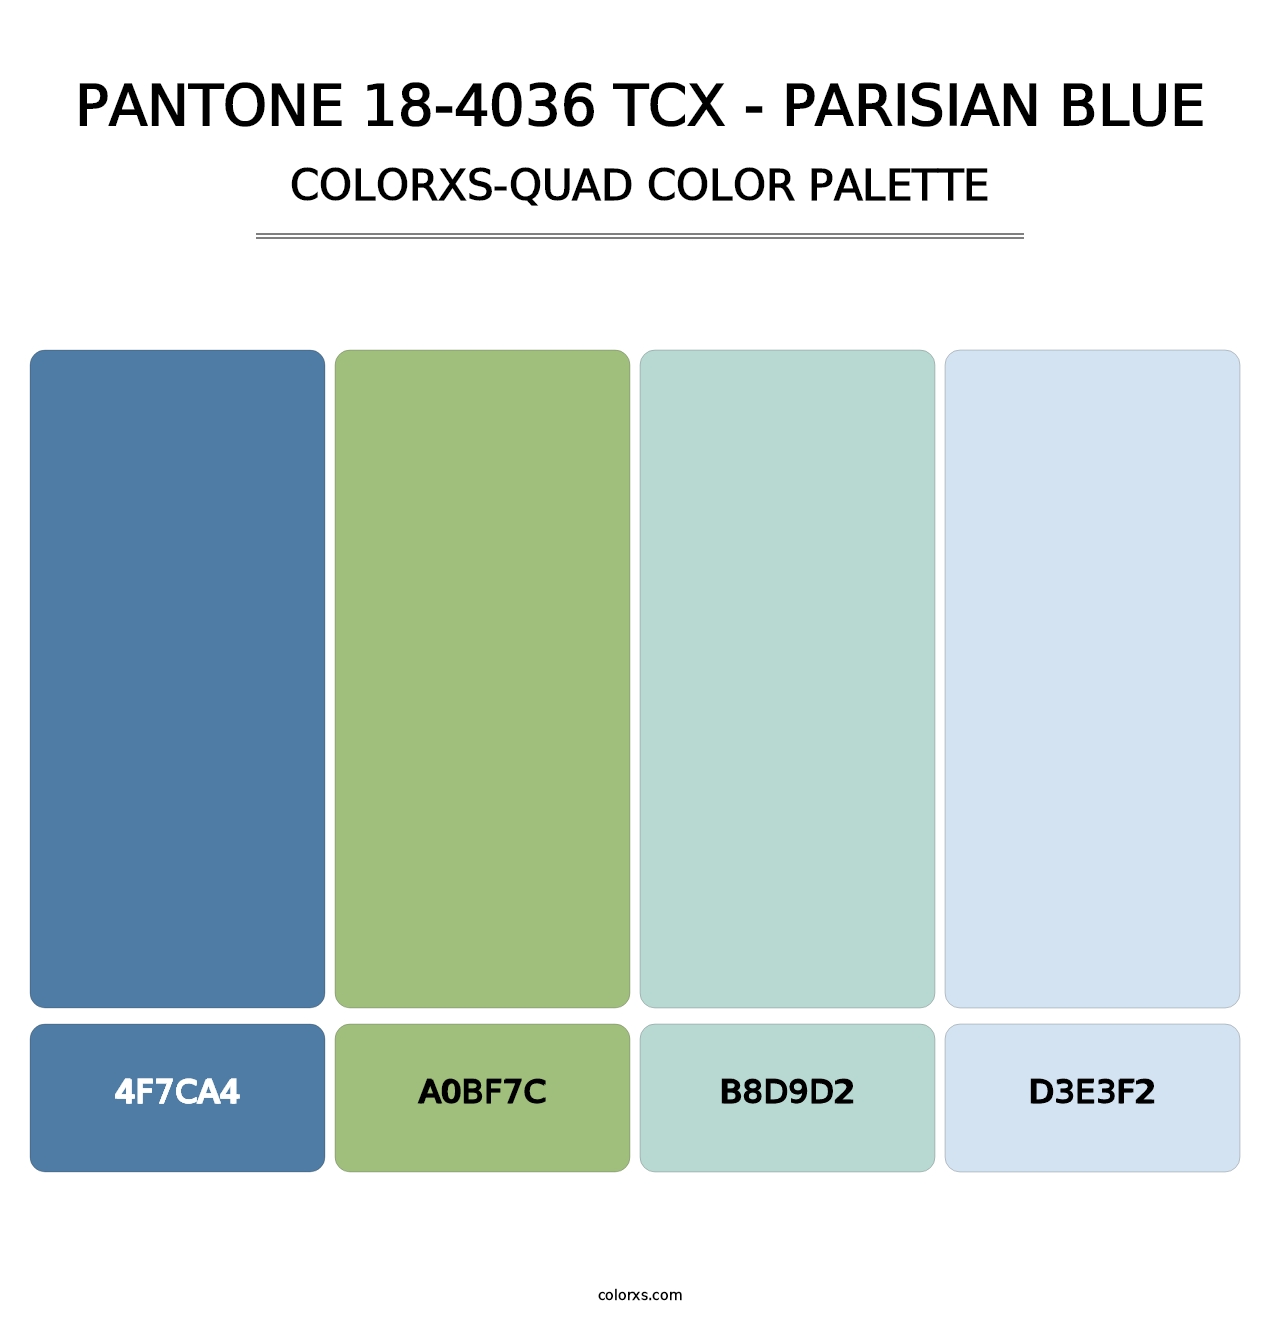 PANTONE 18-4036 TCX - Parisian Blue - Colorxs Quad Palette